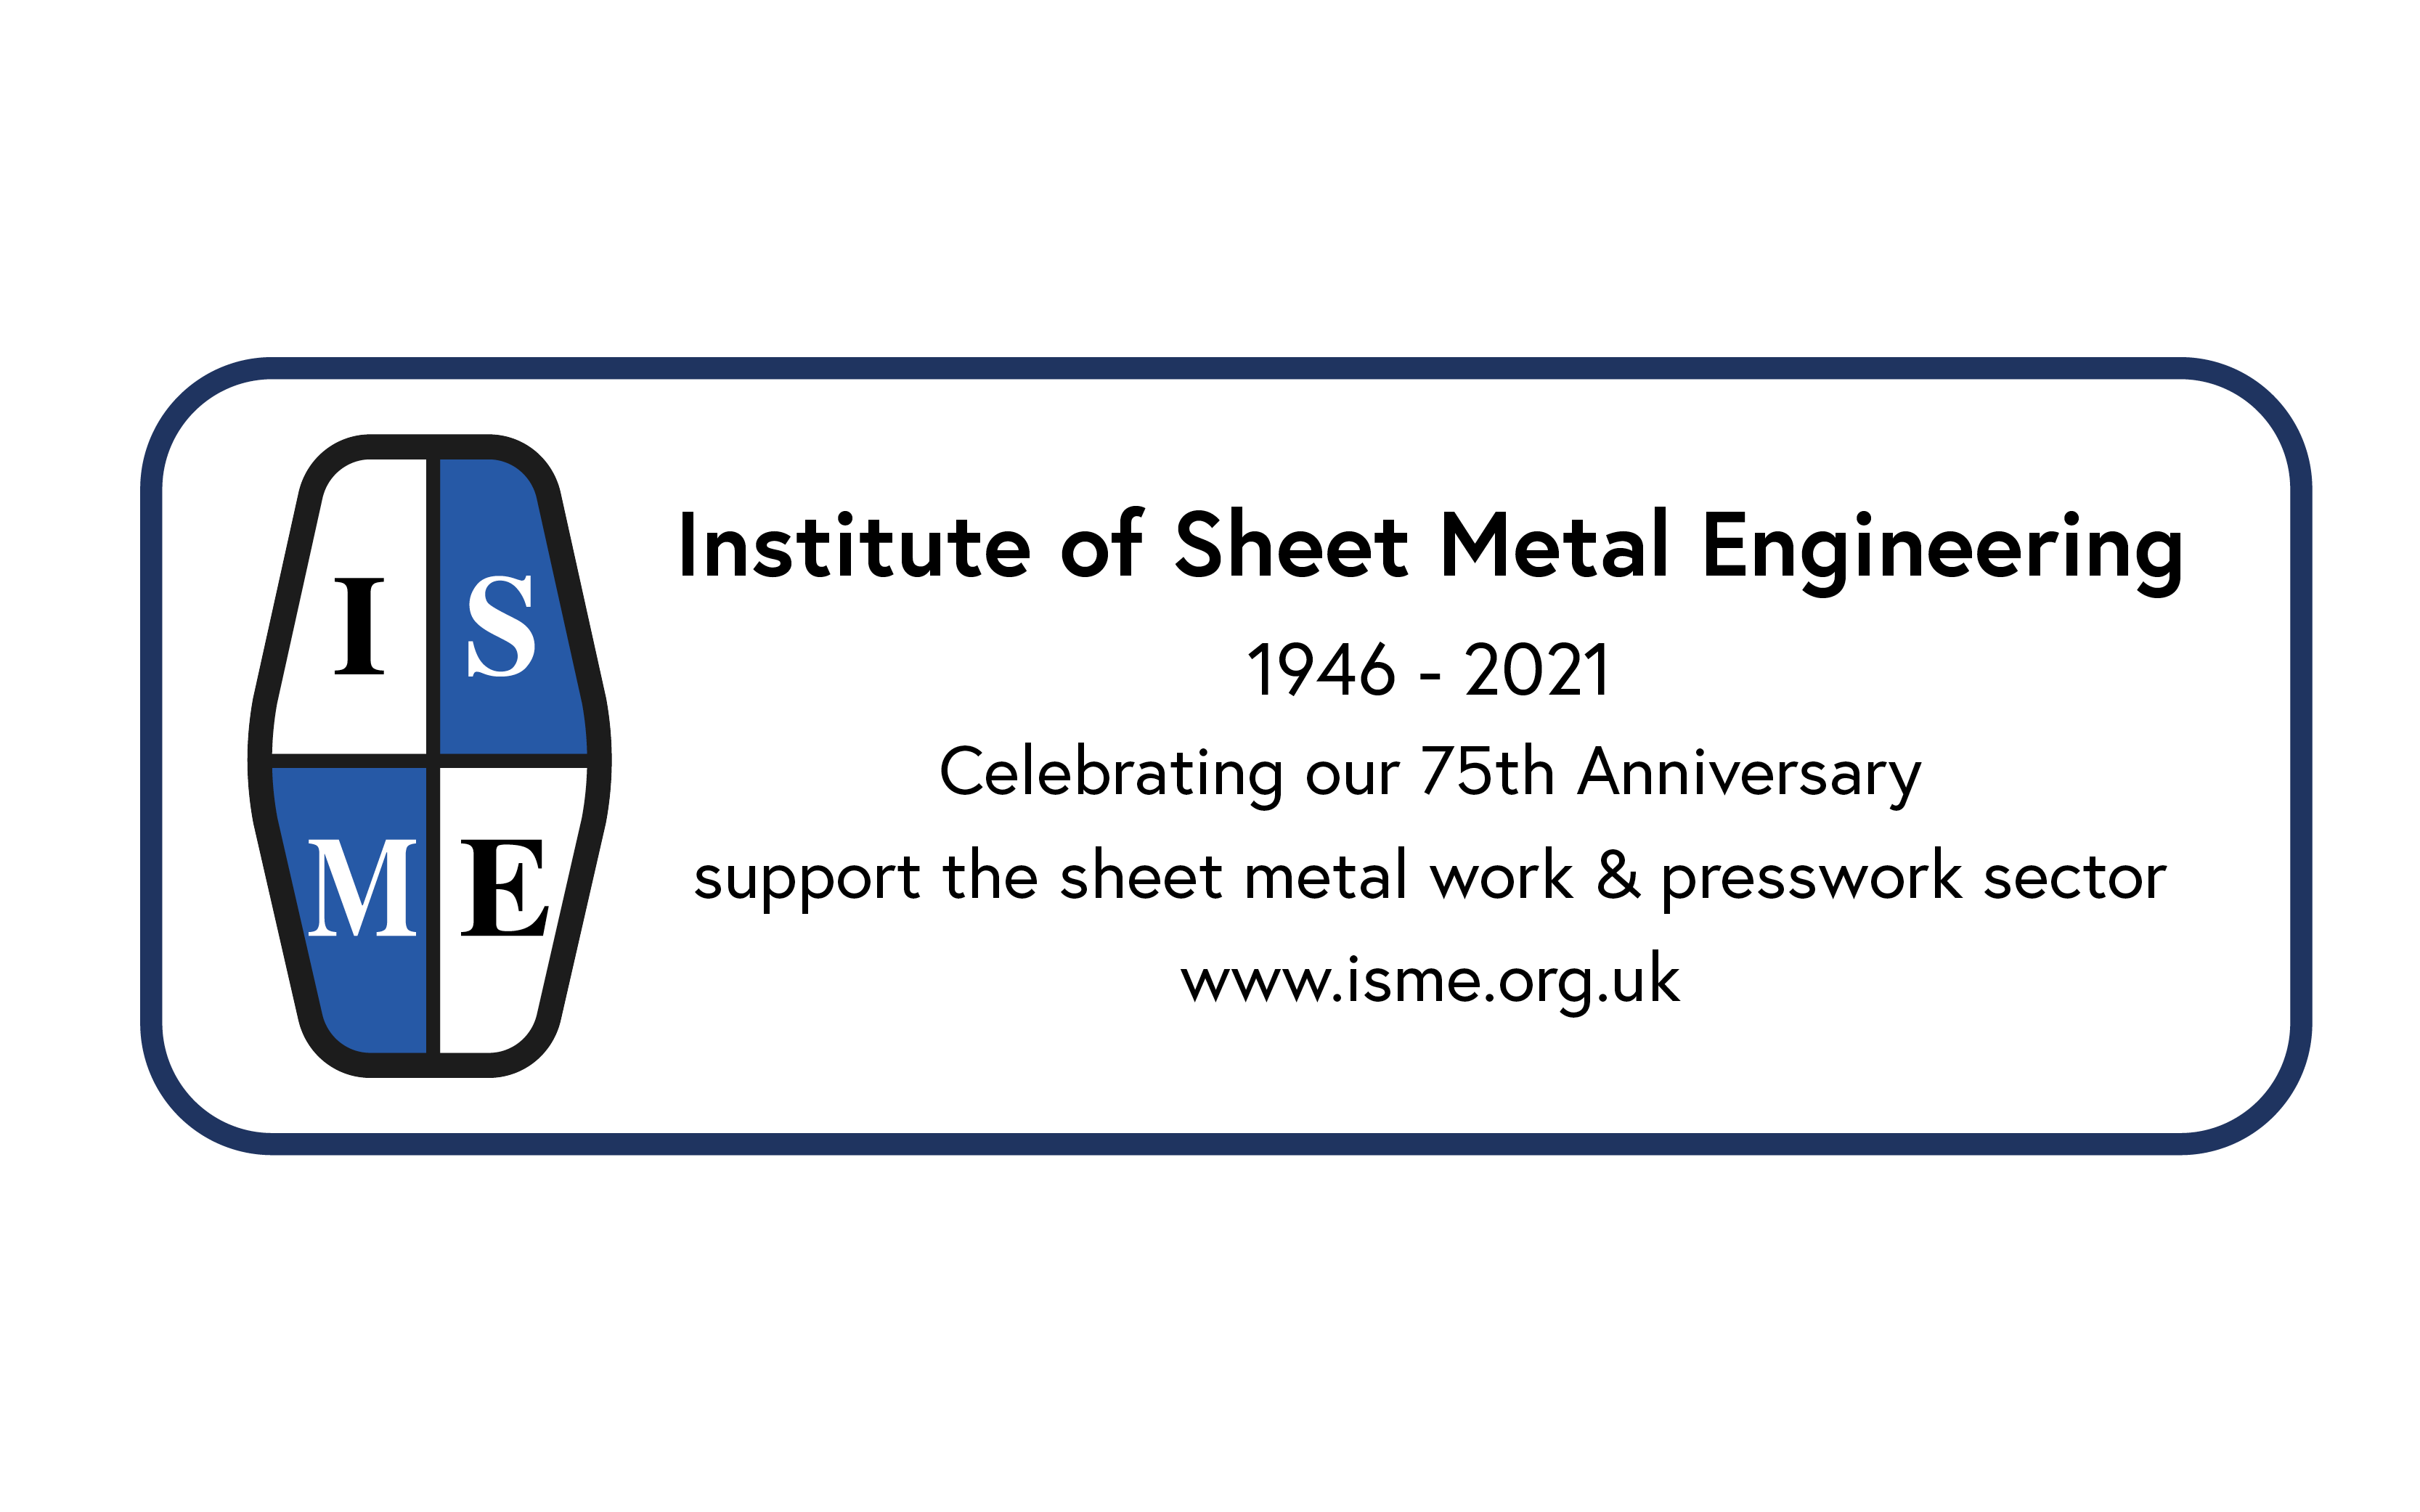 ISME, Institute of Sheet Metal Engineering, sheet metal, institute, anniversary